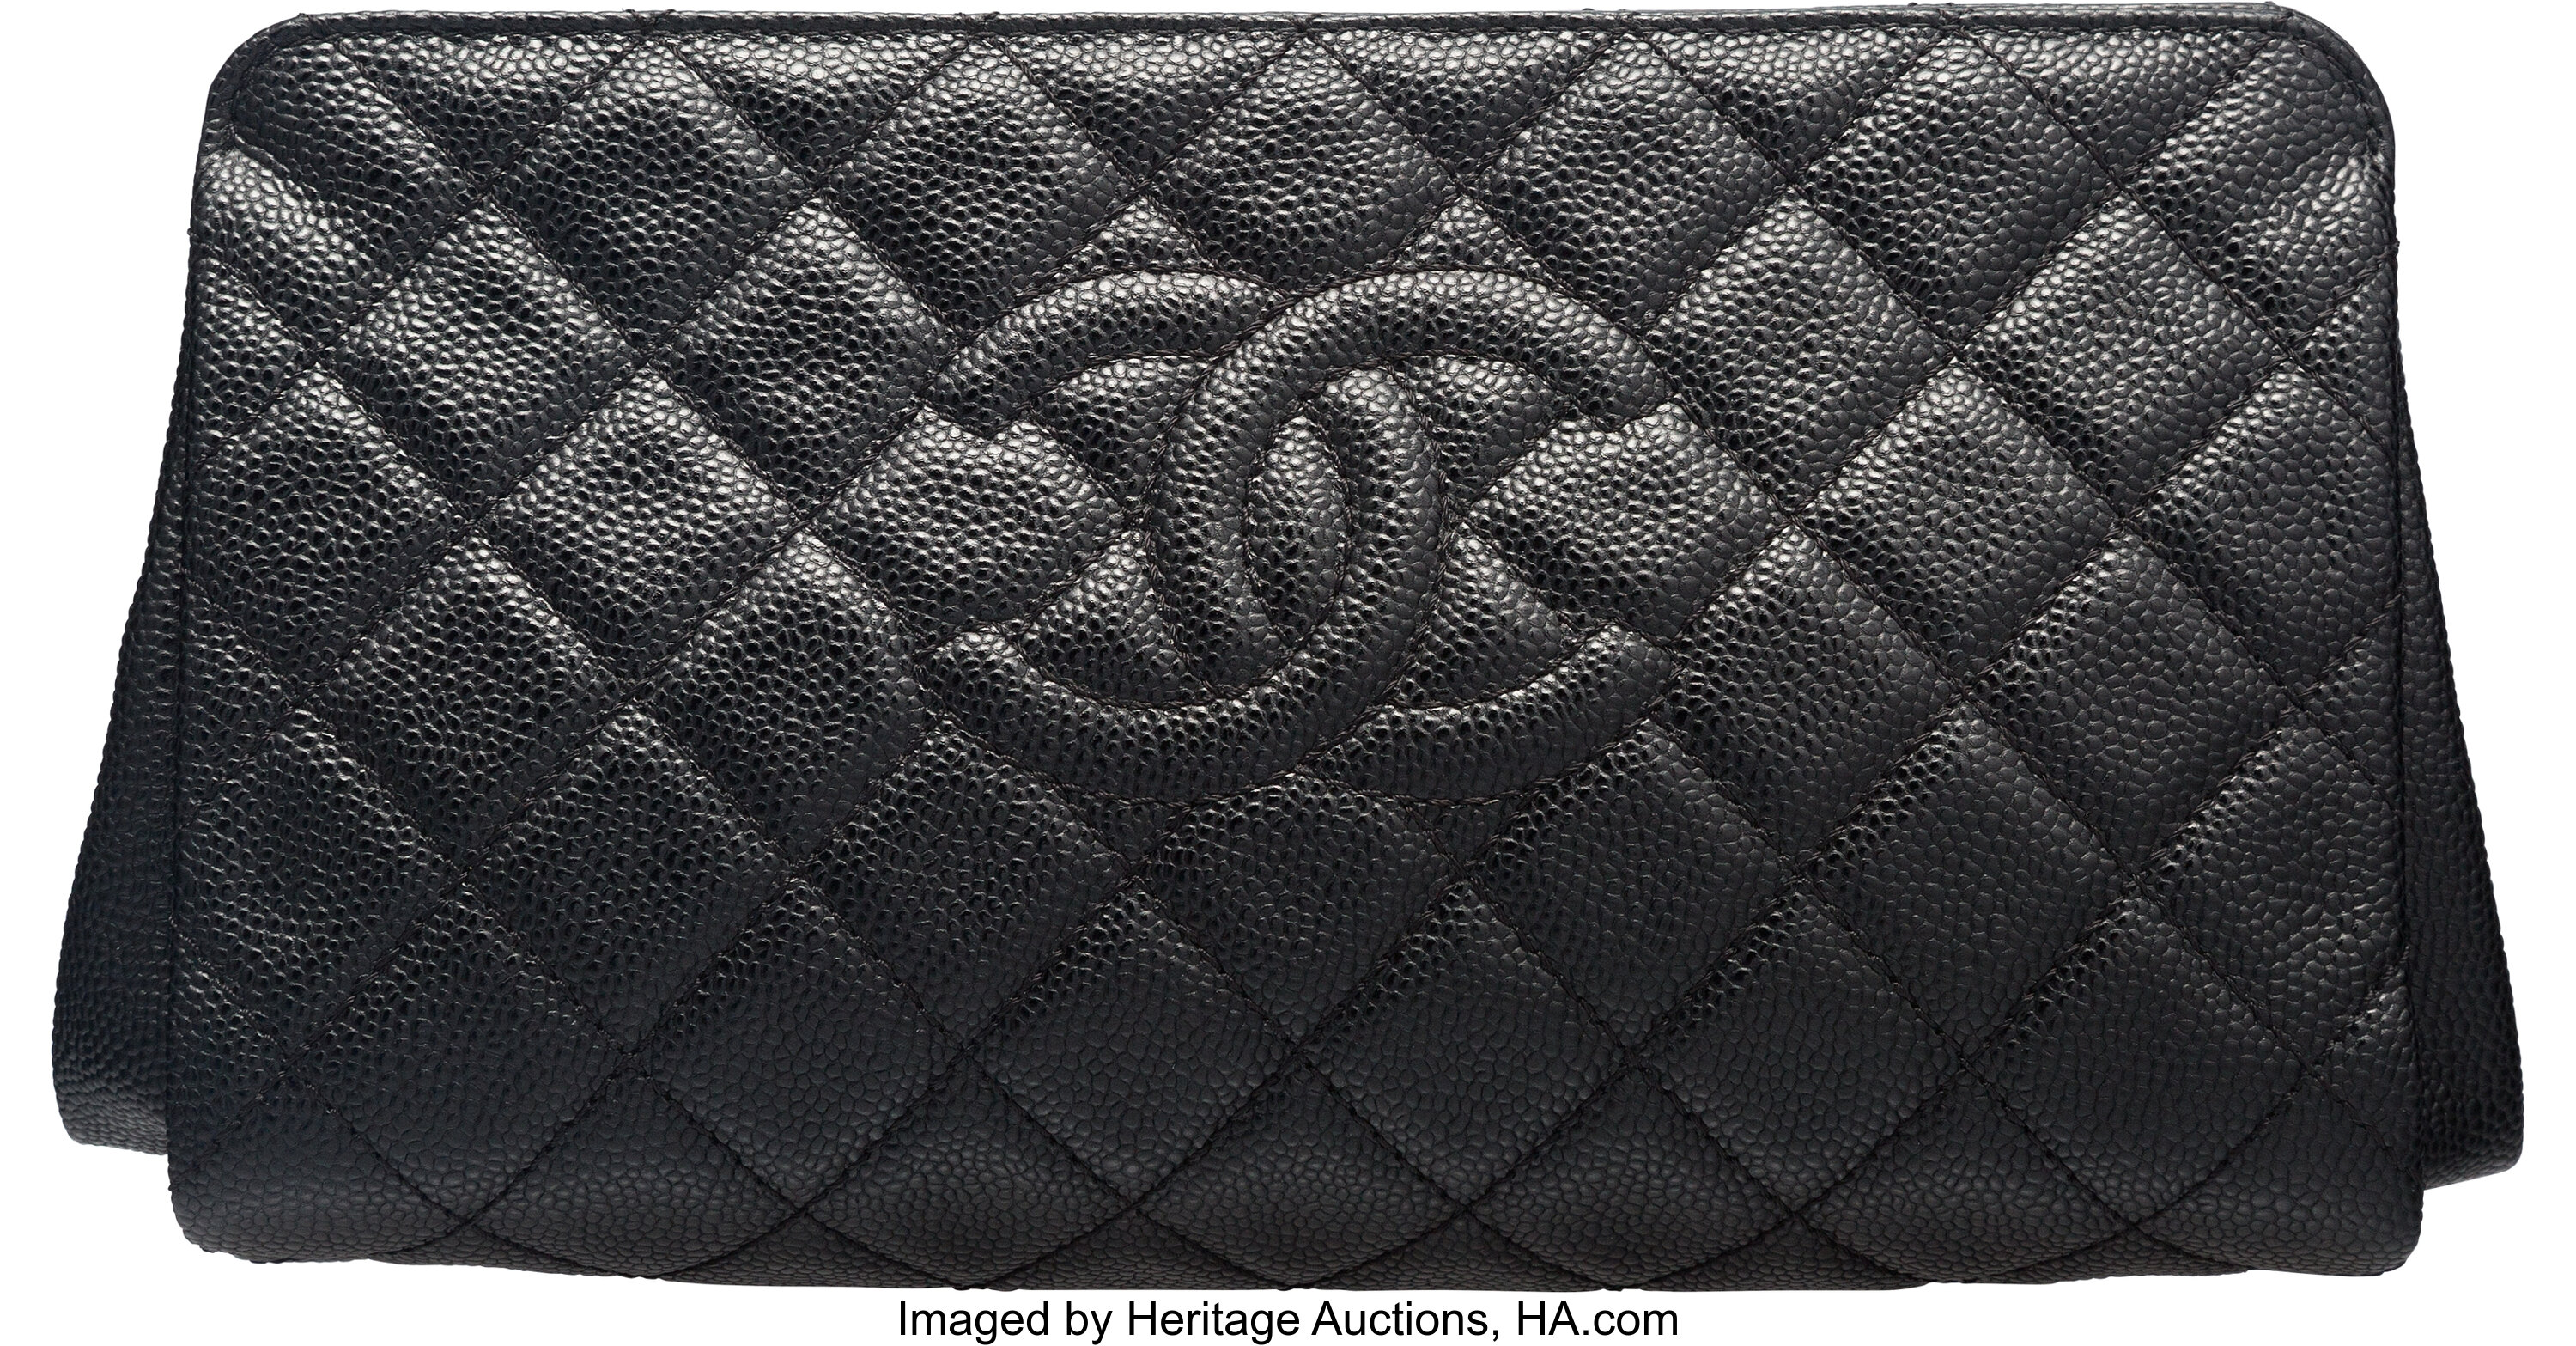 NIB 19B Chanel Black Caviar Timeless Classic Flap Clutch Bag GHW